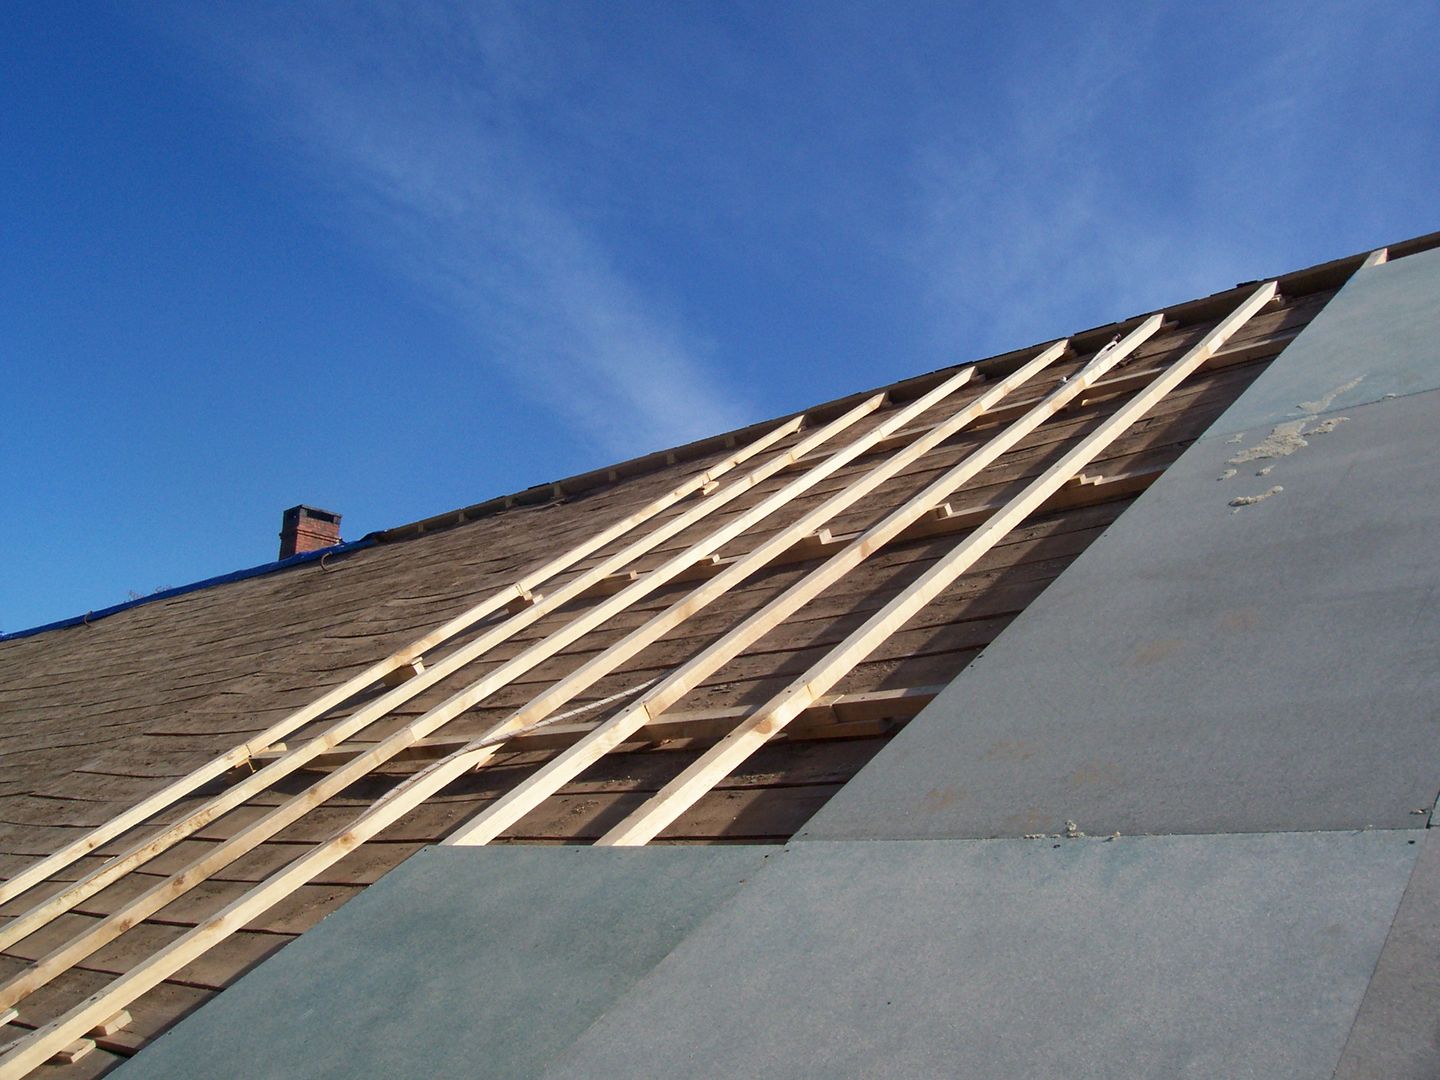 Reparación de tejado de pizarra en Segovia, Recasa, reformas y rehabilitaciones en Marbella Recasa, reformas y rehabilitaciones en Marbella Двускатные крыши Шифер